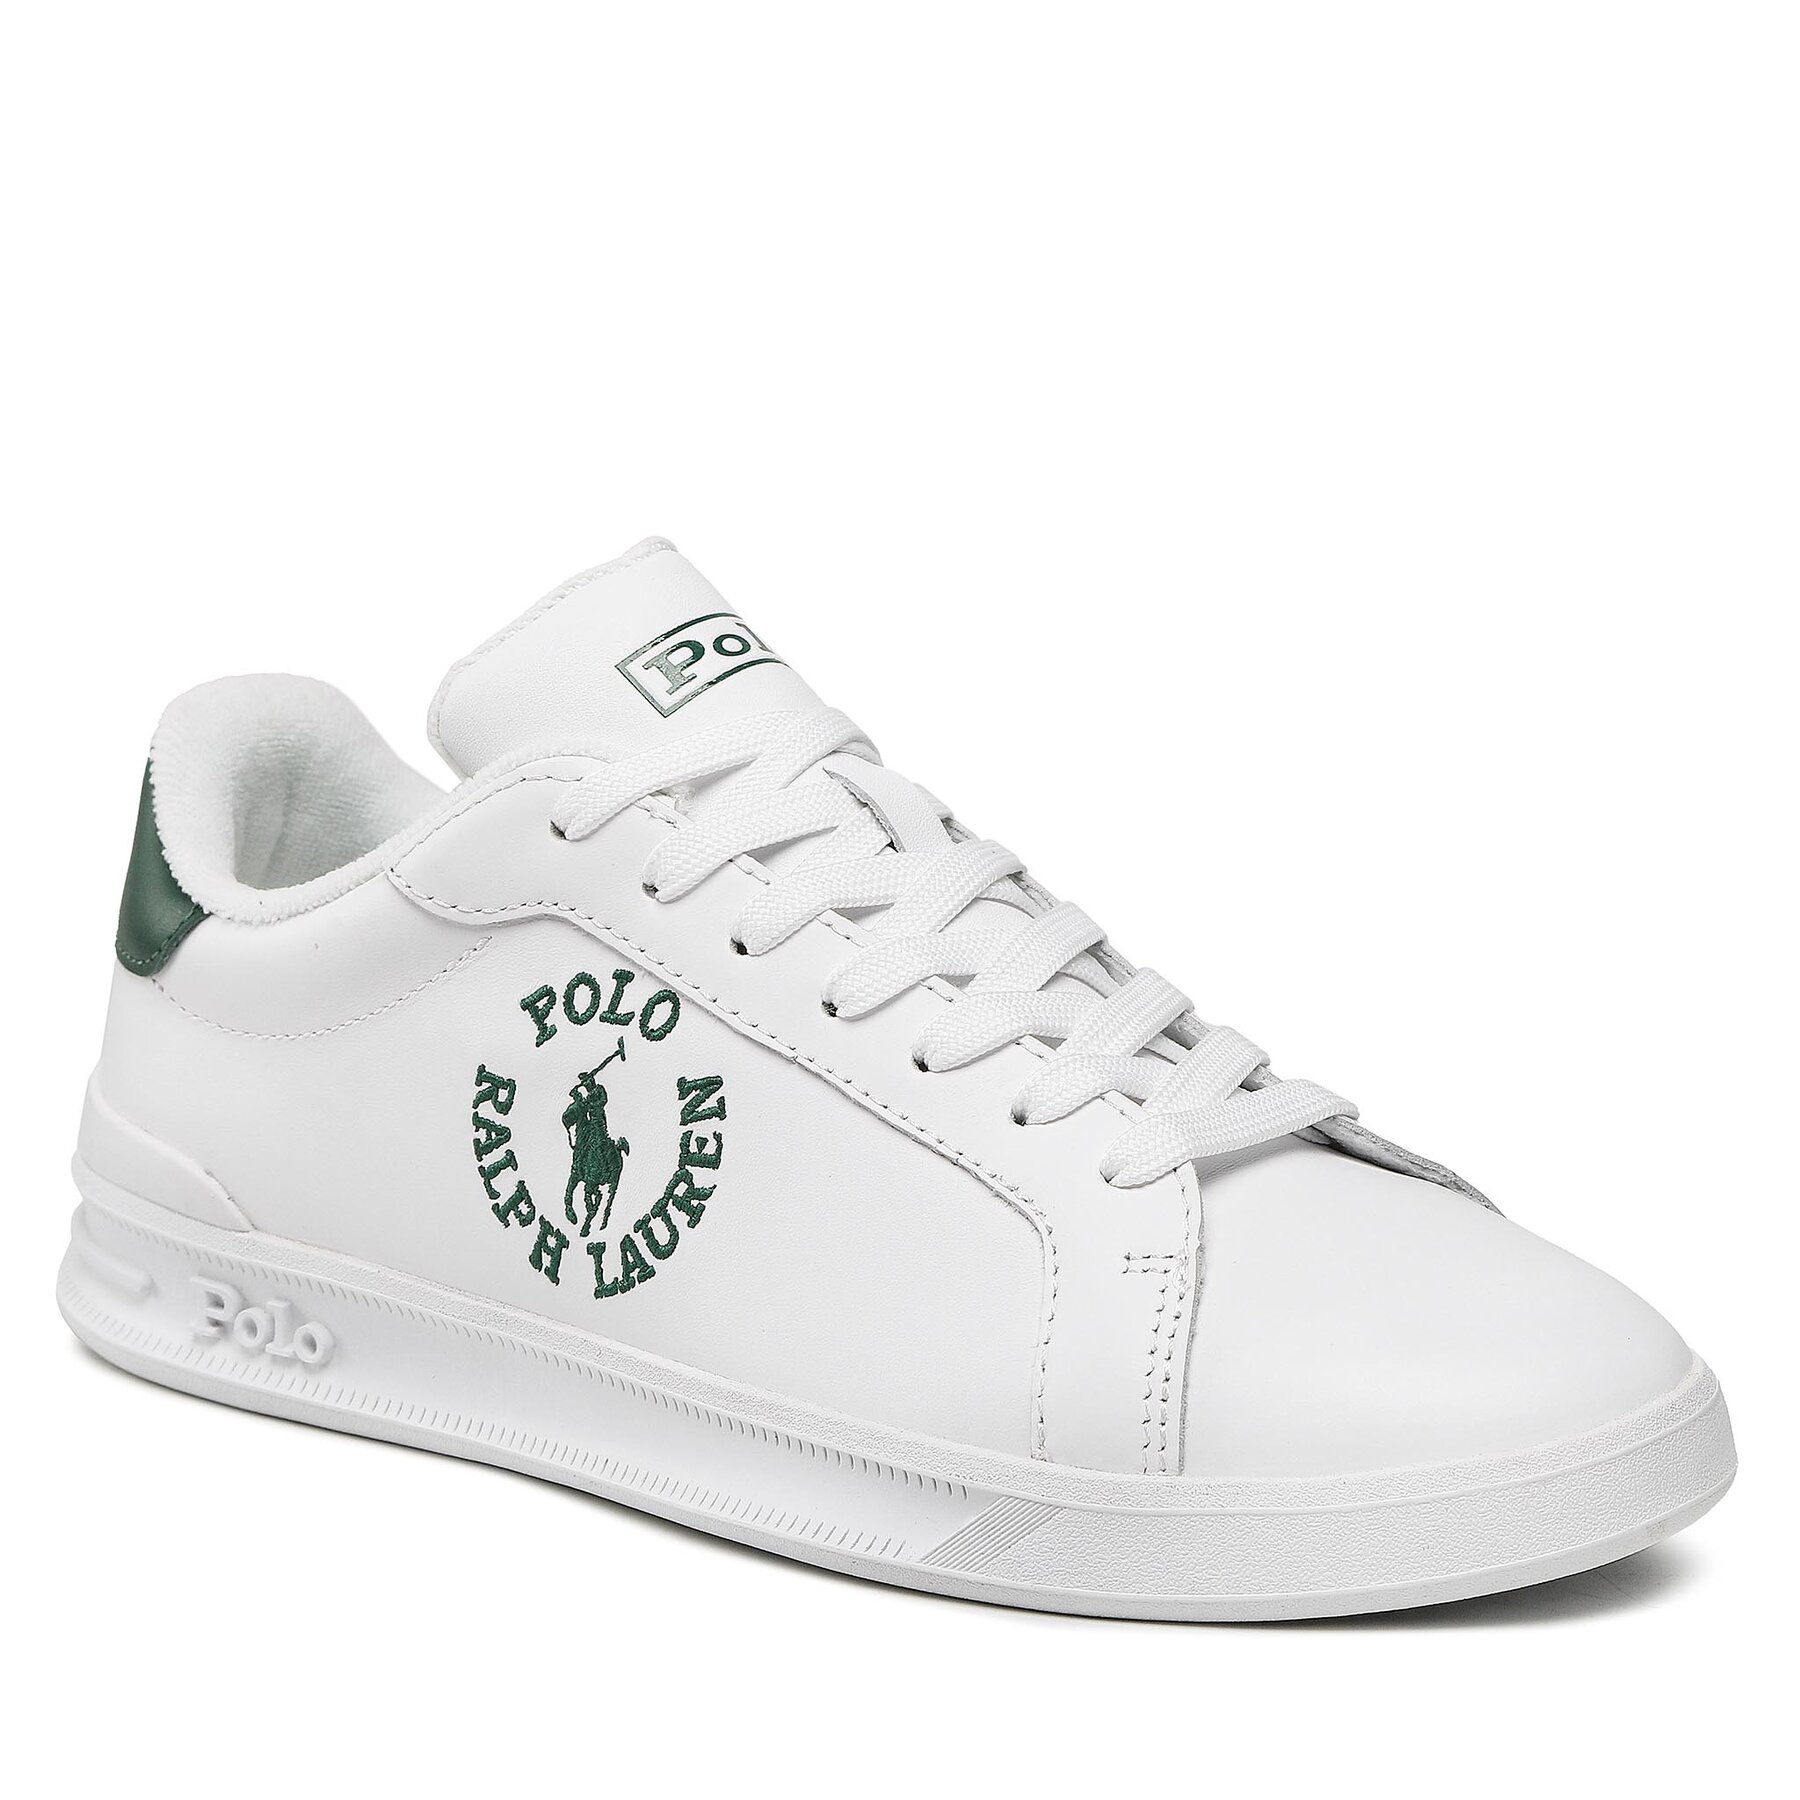 Sneakers Polo Ralph Lauren Hrt Crt Cl 809877600001 White